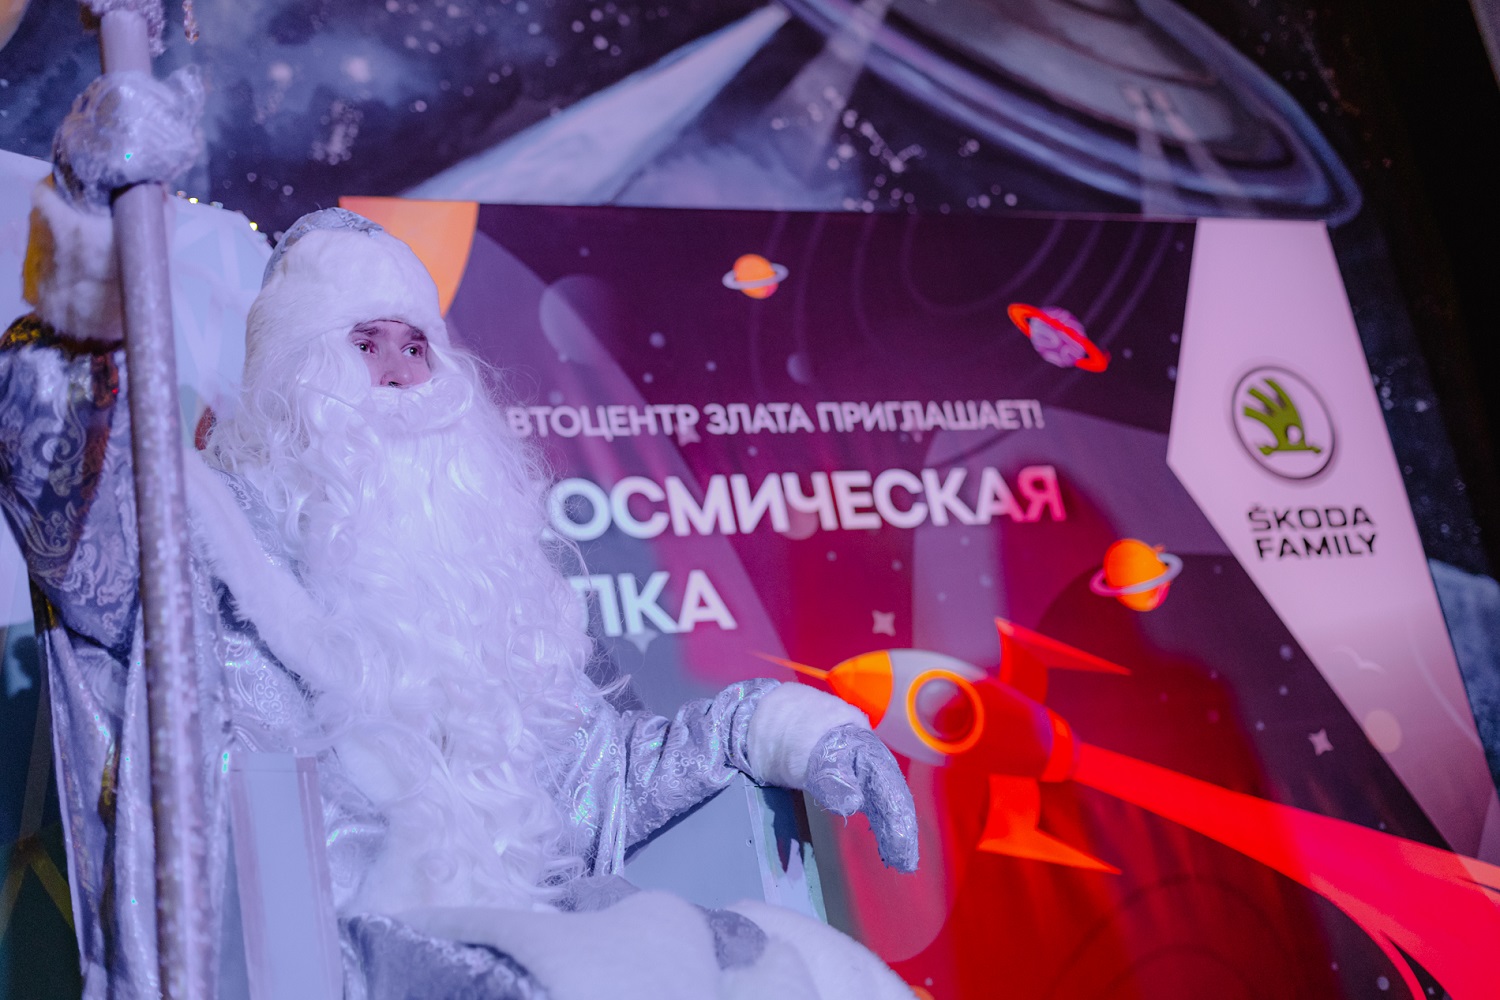 АВТОЦЕНТР ЗЛАТА провел Новогоднее мероприятие с космической тематикой